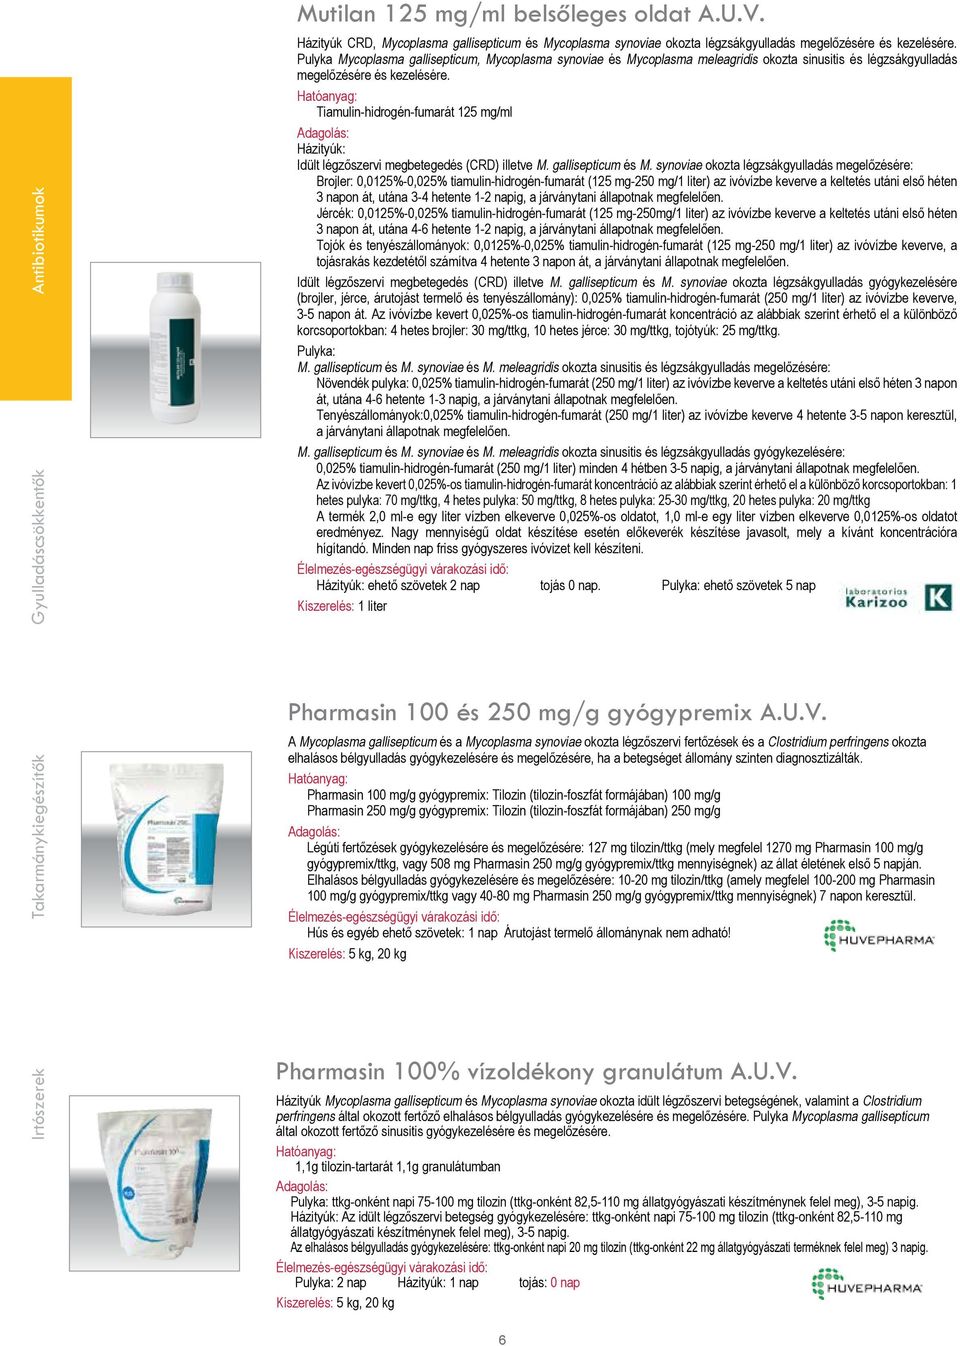 Tiamulin-hidrogén-fumarát 125 mg/ml Házityúk: Idült légzőszervi megbetegedés (CRD) illetve M. gallisepticum és M.